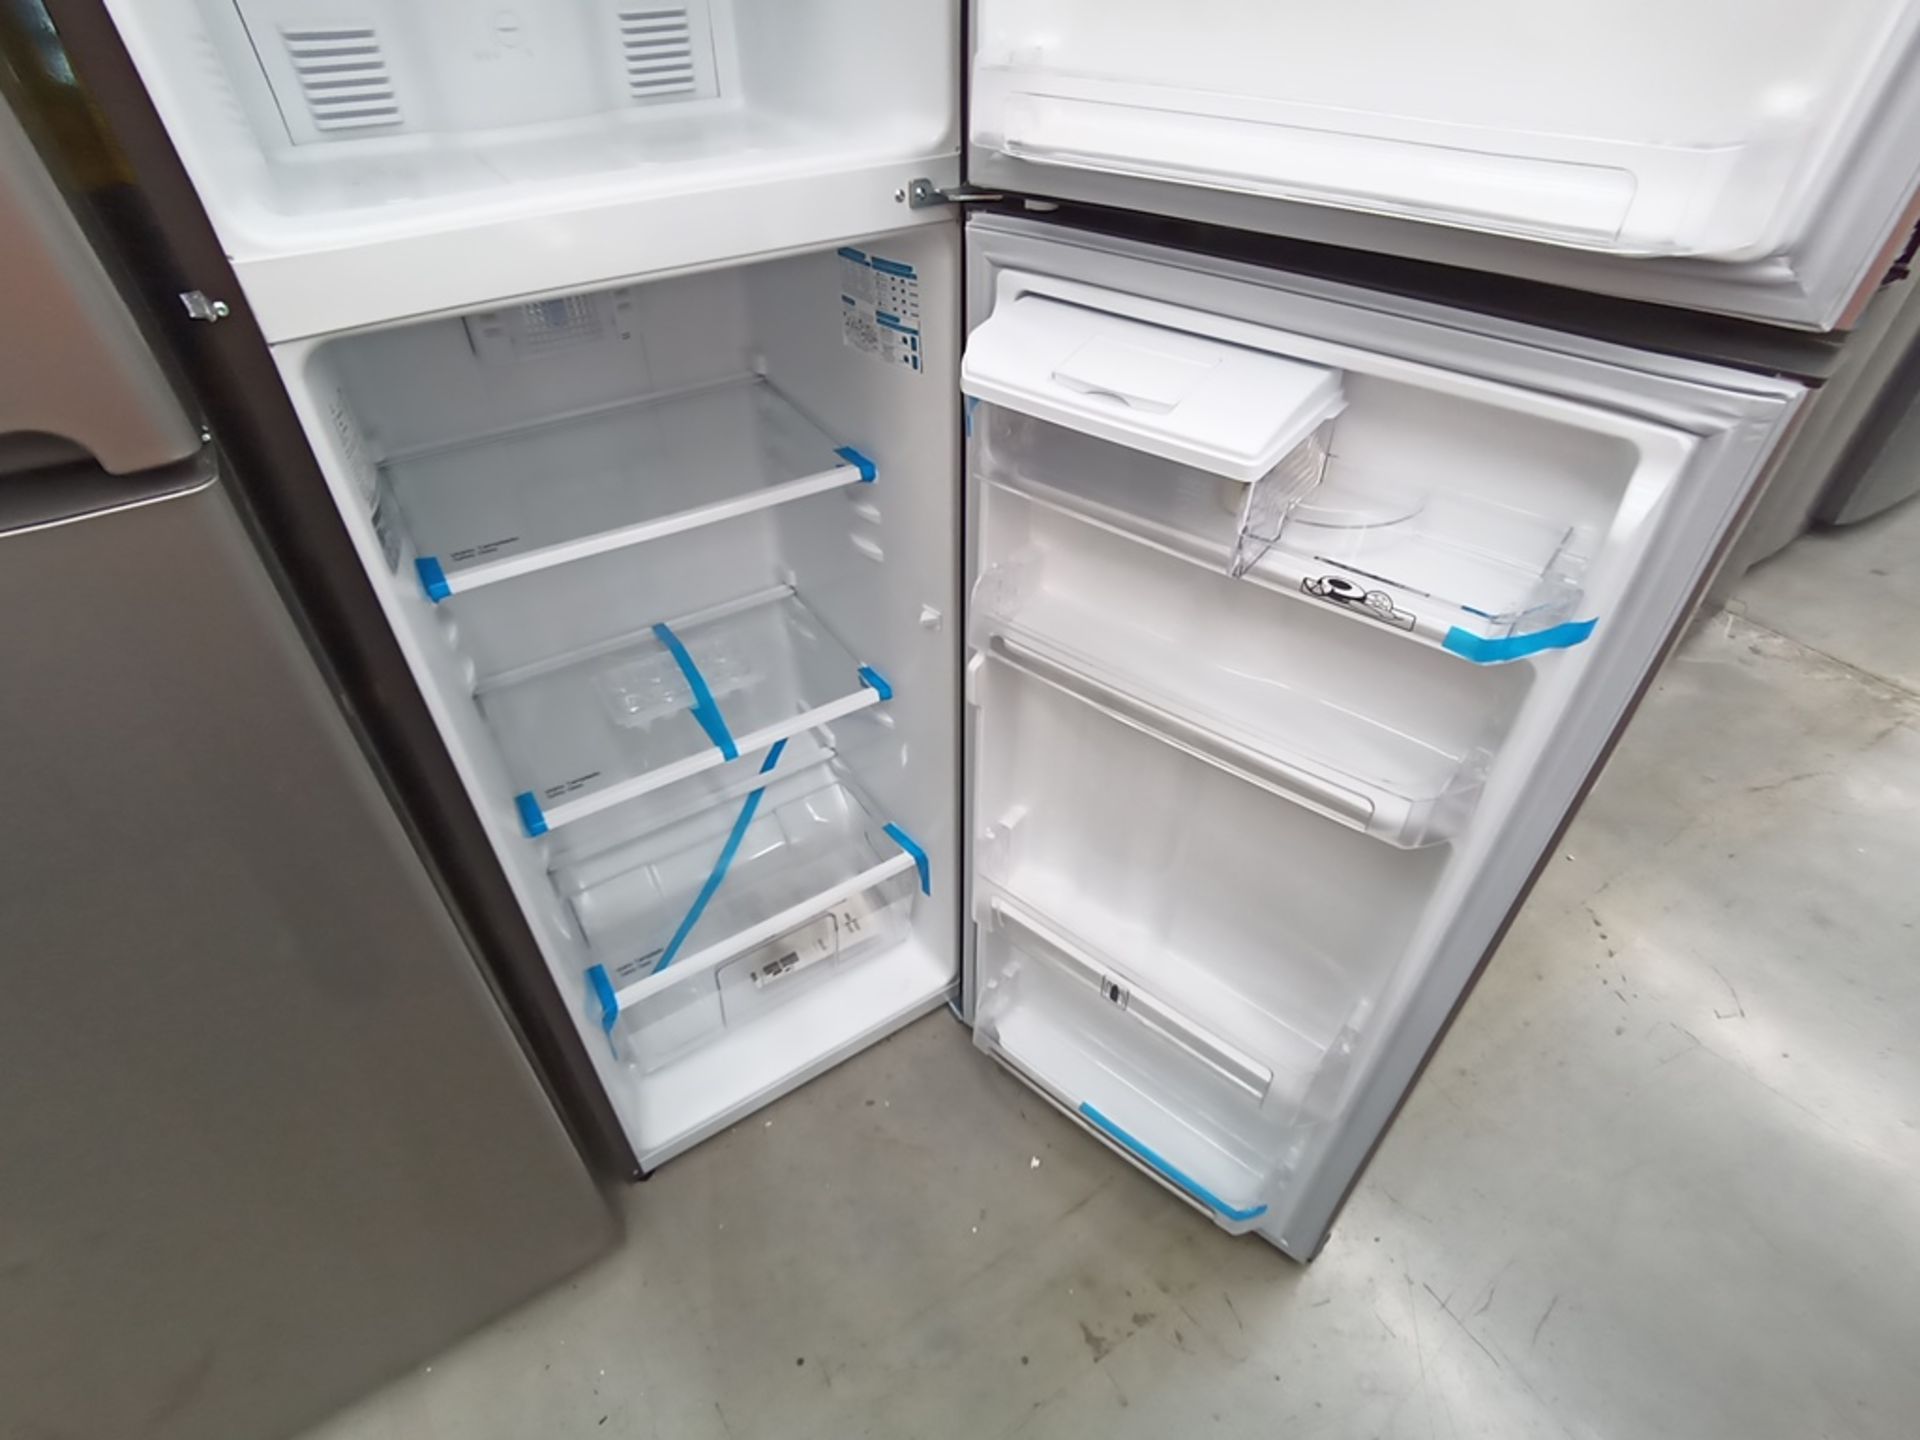 Lote de 2 refrigeradores contiene: 1 Refrigerador con dispensador de agua, Marca Mabe, Modelo RMA11 - Image 9 of 15